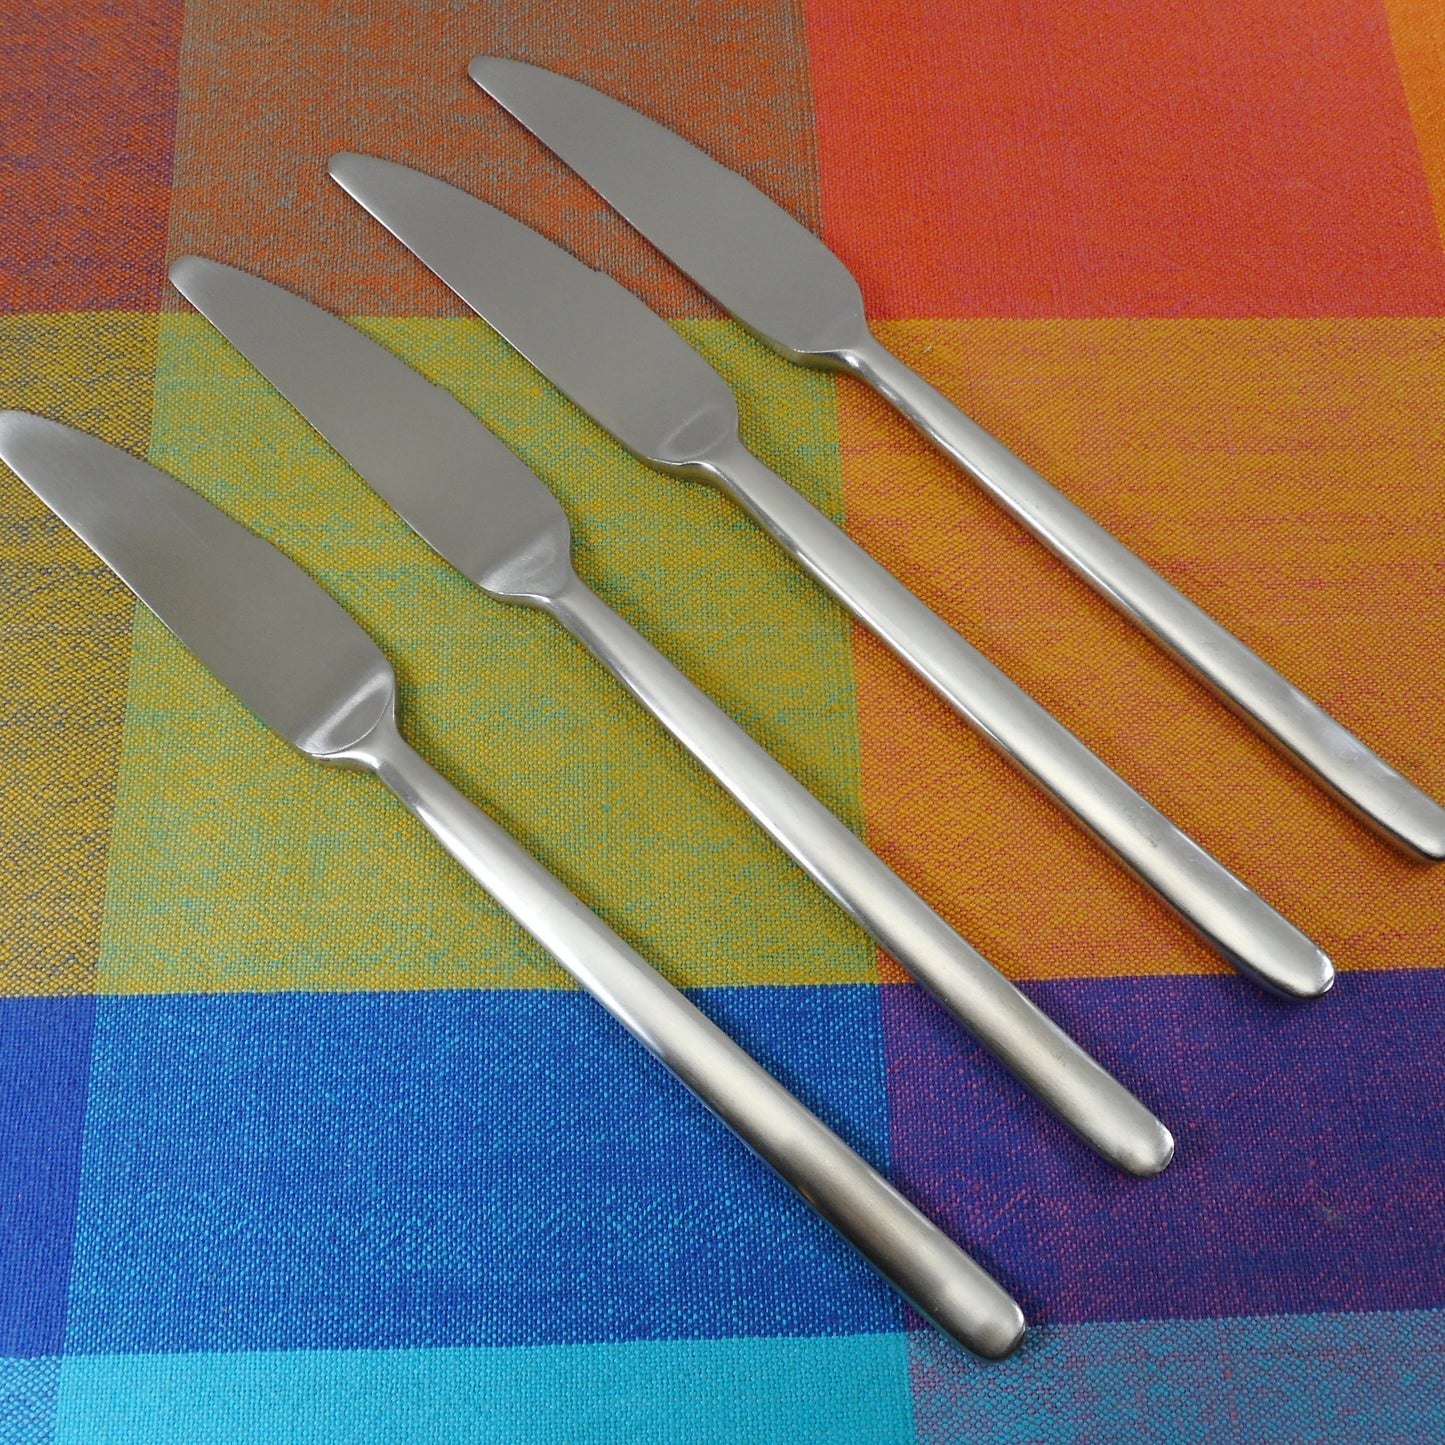 IKEA Data Stainless Flatware - 4 Set Dinner Knives